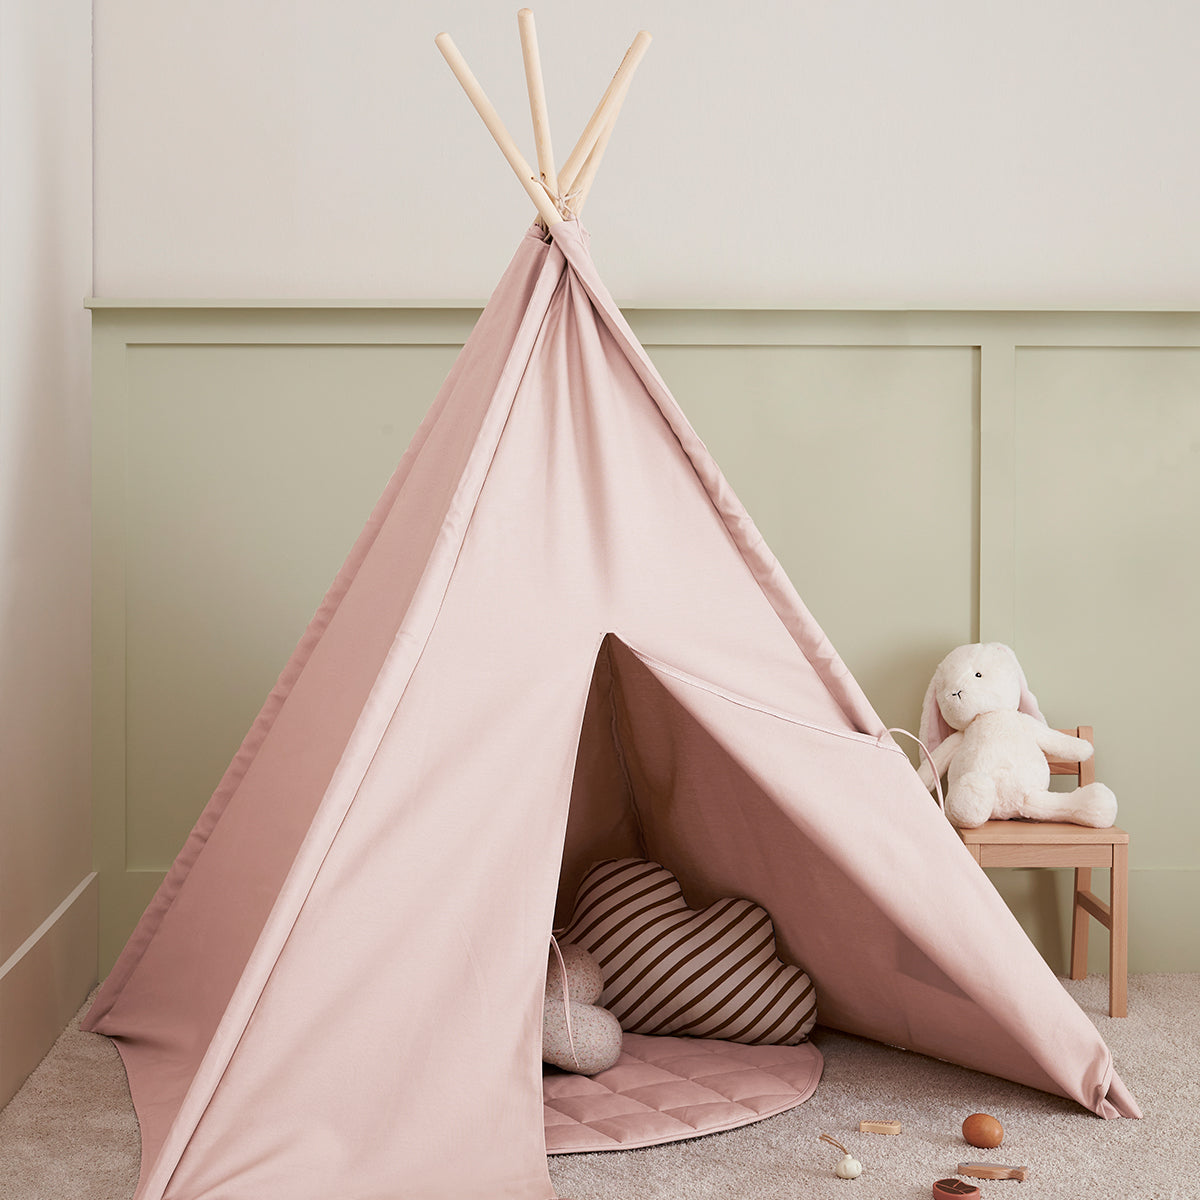 De Kid's Concept tipi tent lichtroze is het perfecte plekje voor jouw kindje om lekker in te spelen of in te relaxen. Gebruik de tipi als wigwam, speeltent, huisje of neem dekens, kussens en een boek mee en ga lekker lezen. VanZus.